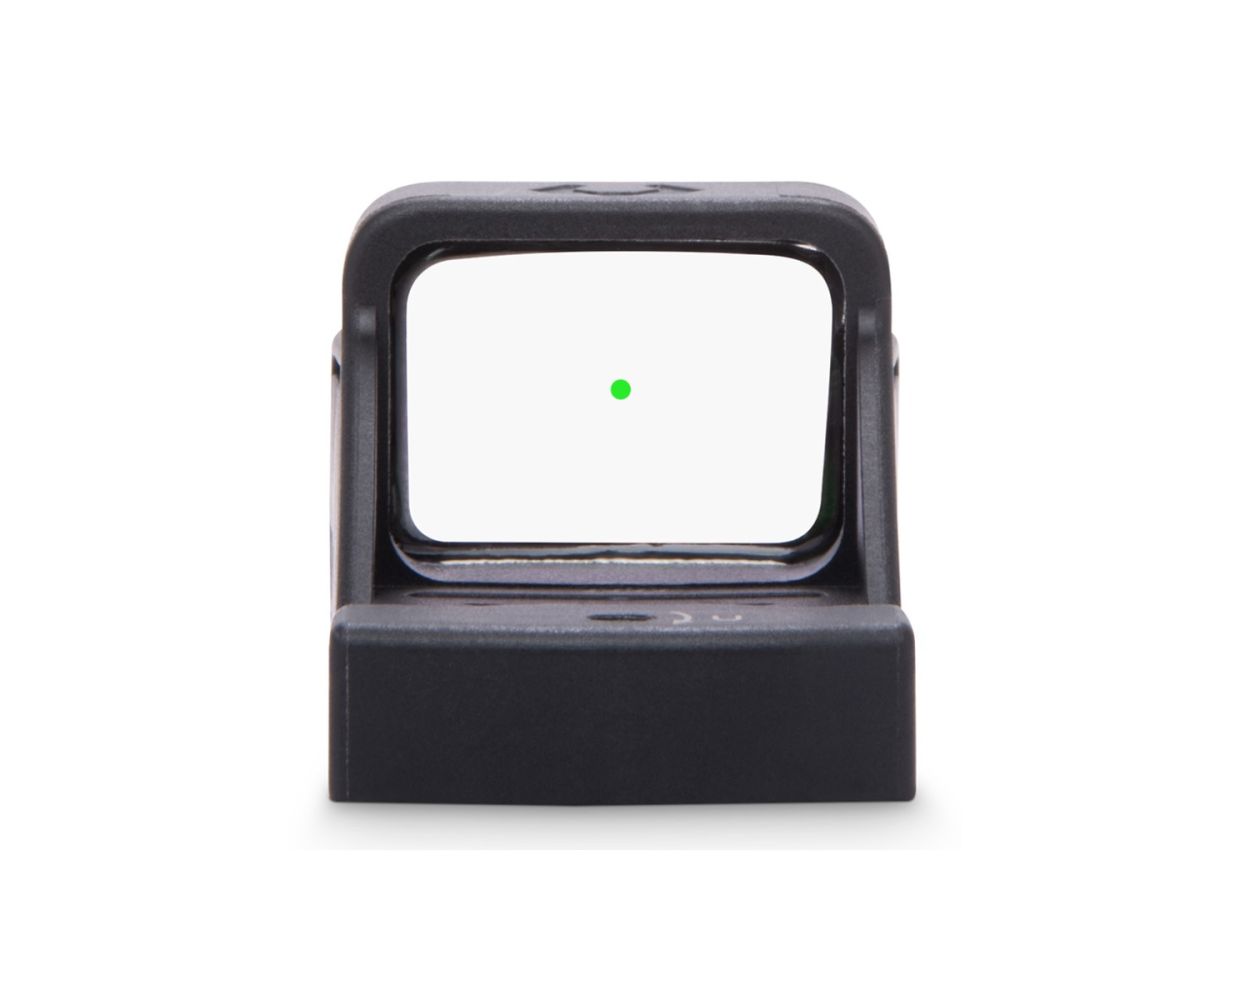 Viridian RFX 11 3 MOA Green Dot Sight - RMSc Footprint - High Strength Polymer Housing